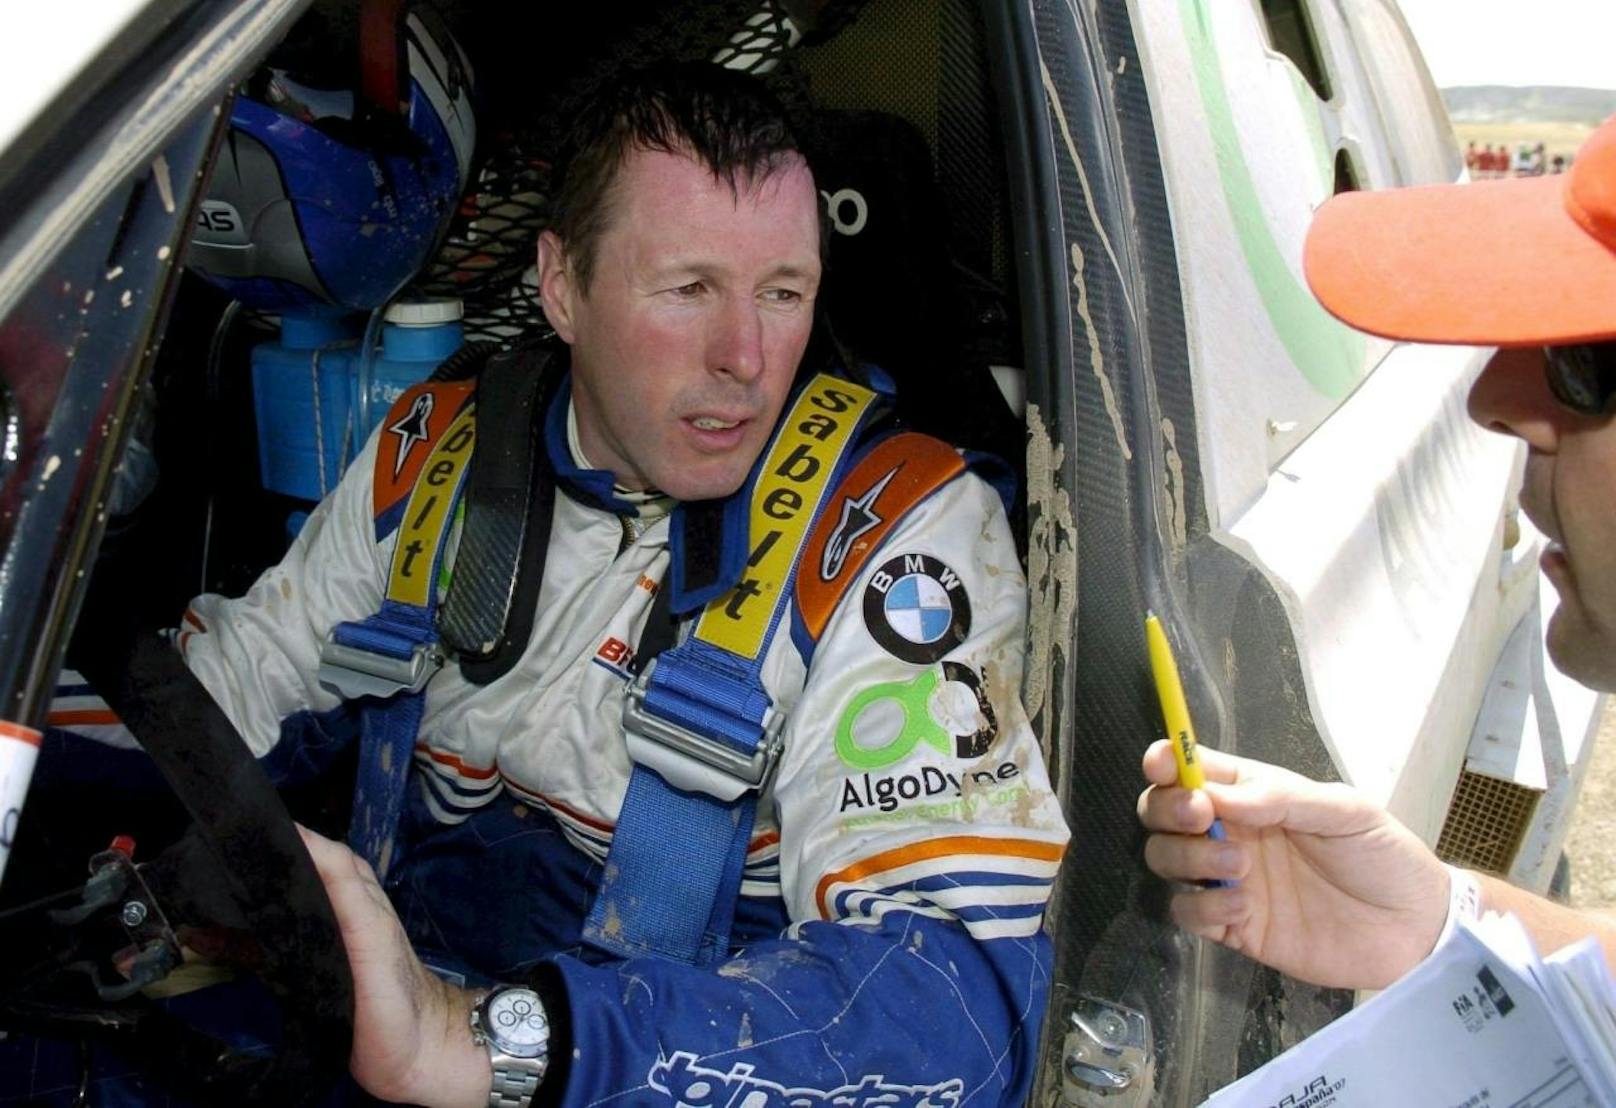 Der Schotte Colin McRae, Rallye-Weltmeister 1995, verunglückte 2007 mit seinem privaten Helikopter auf seinem Privatanwesen. Drei weitere Personen ließen ihr Leben, darunter McRaes fünfjähriger Sohn.